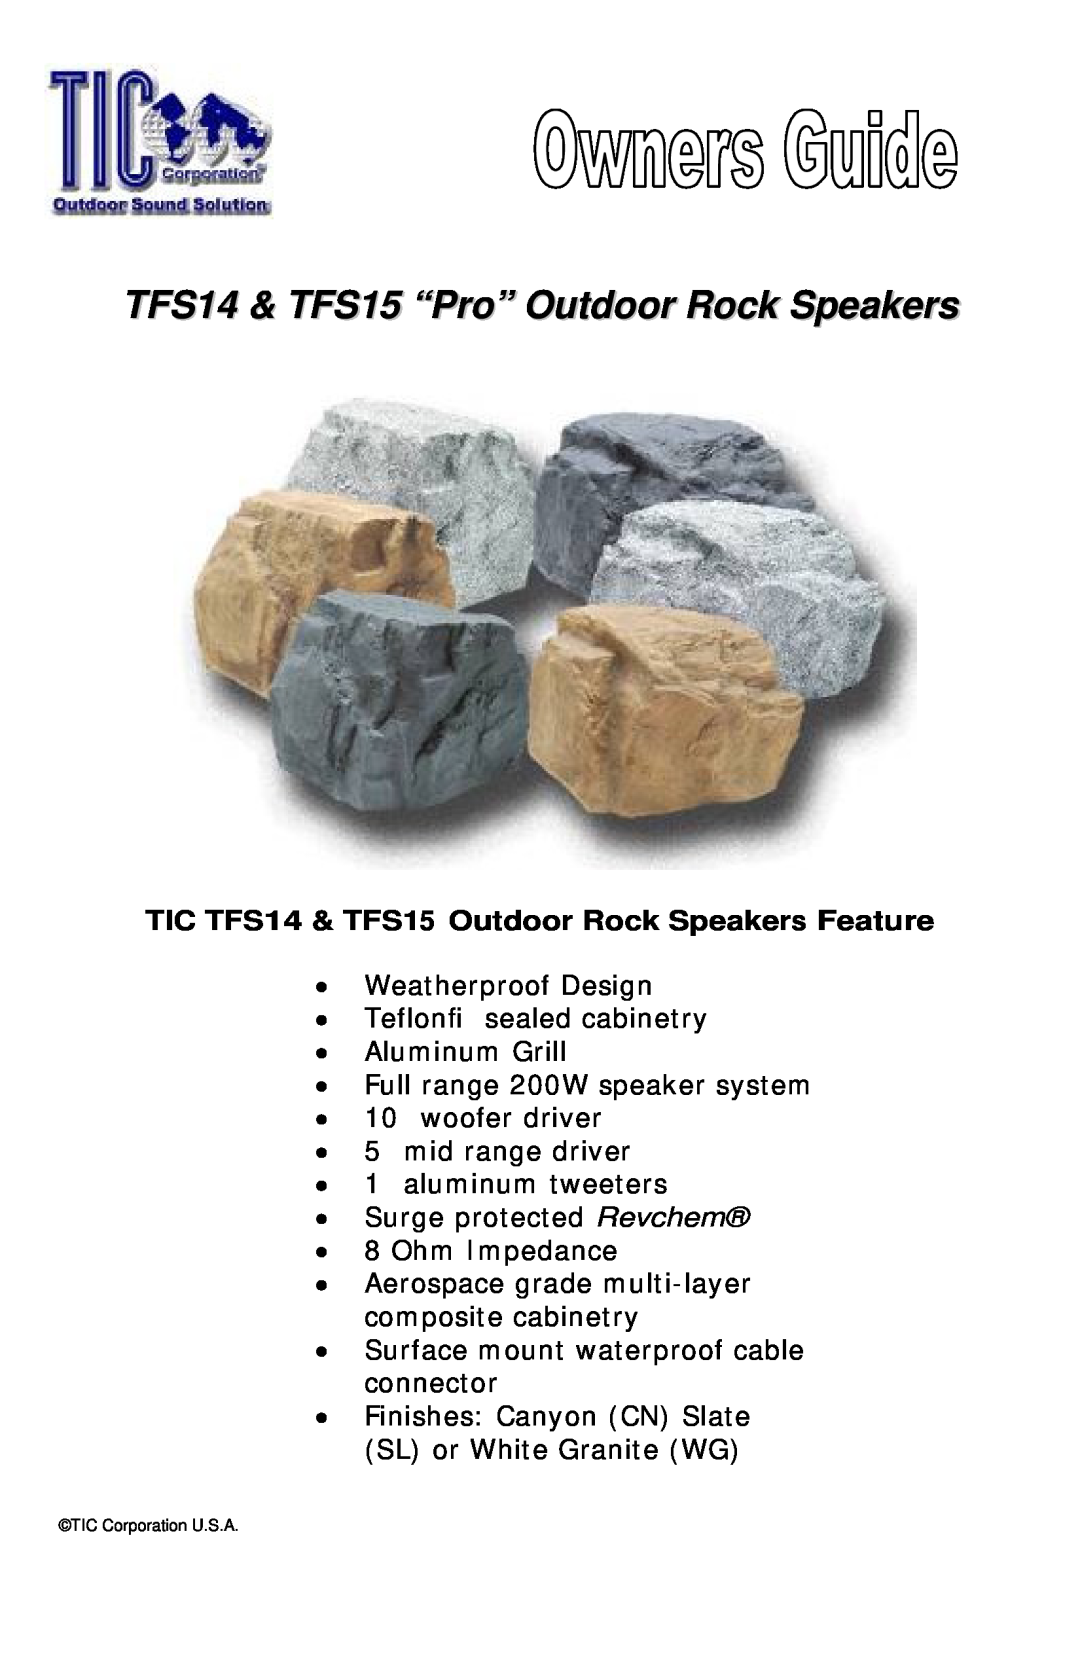 TIC manual TFS14 & TFS15 “Pro” Outdoor Rock Speakers, TIC TFS14 & TFS15 Outdoor Rock Speakers Feature 